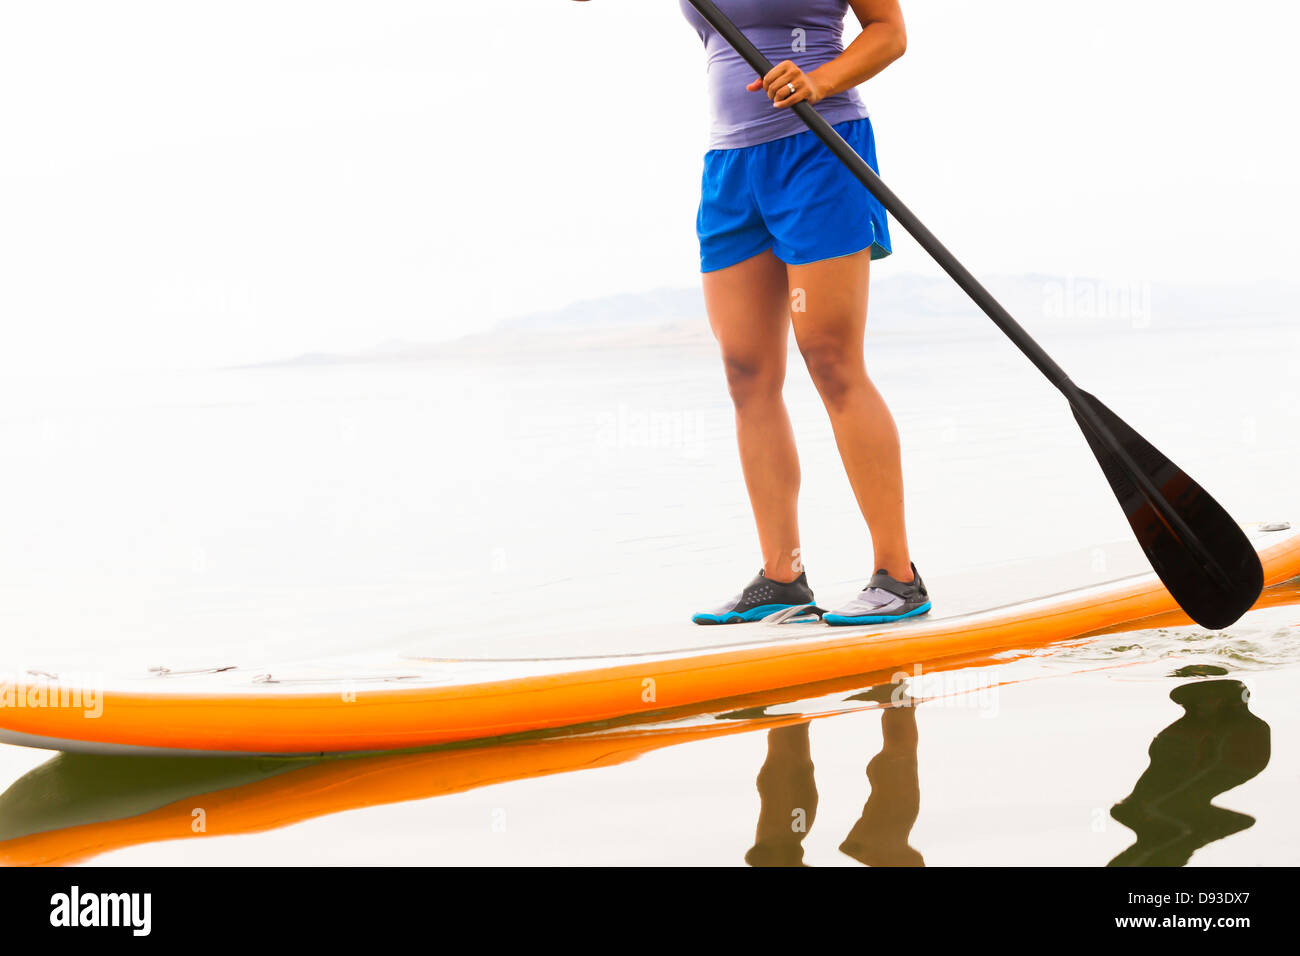 Filipino woman riding paddle board Stock Photo